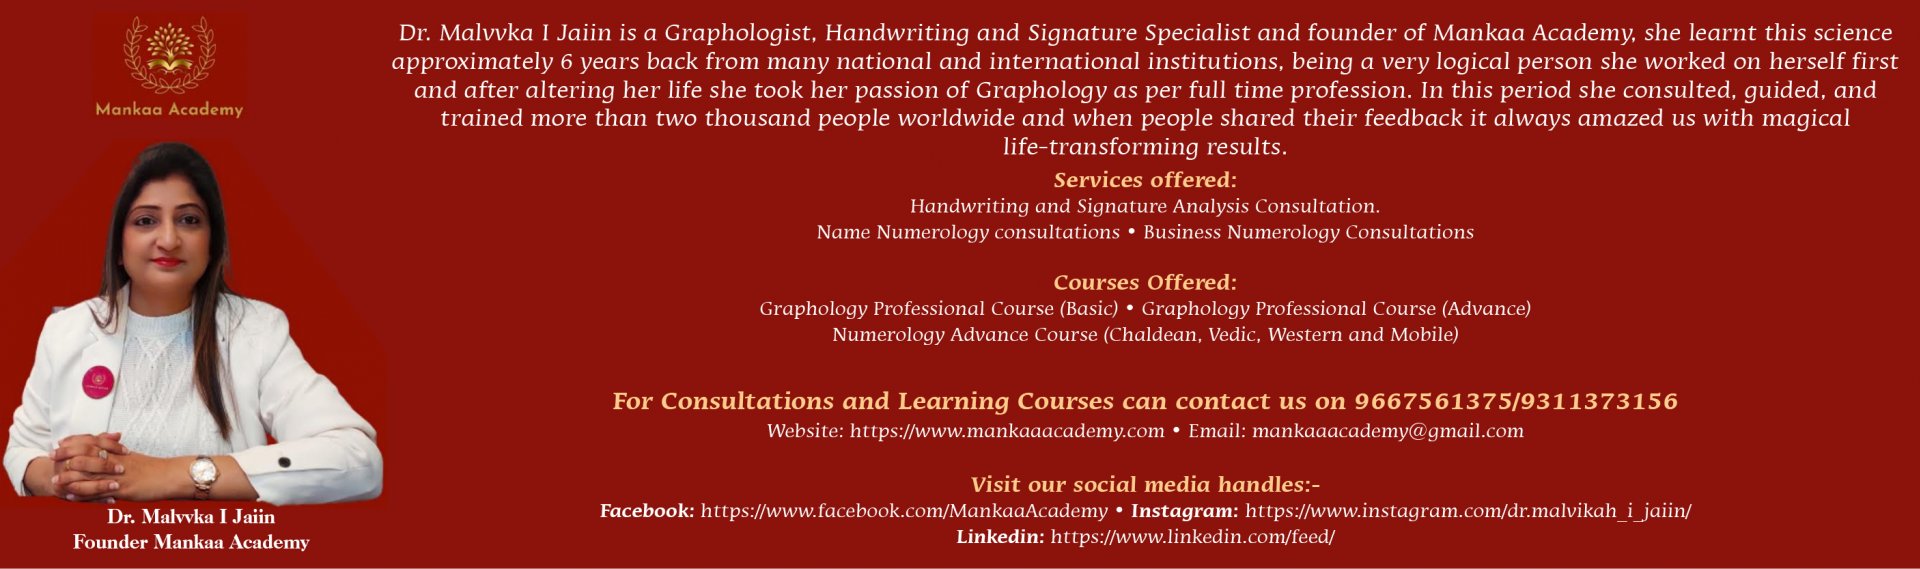 Handwriting and Signature Analysis Consultation